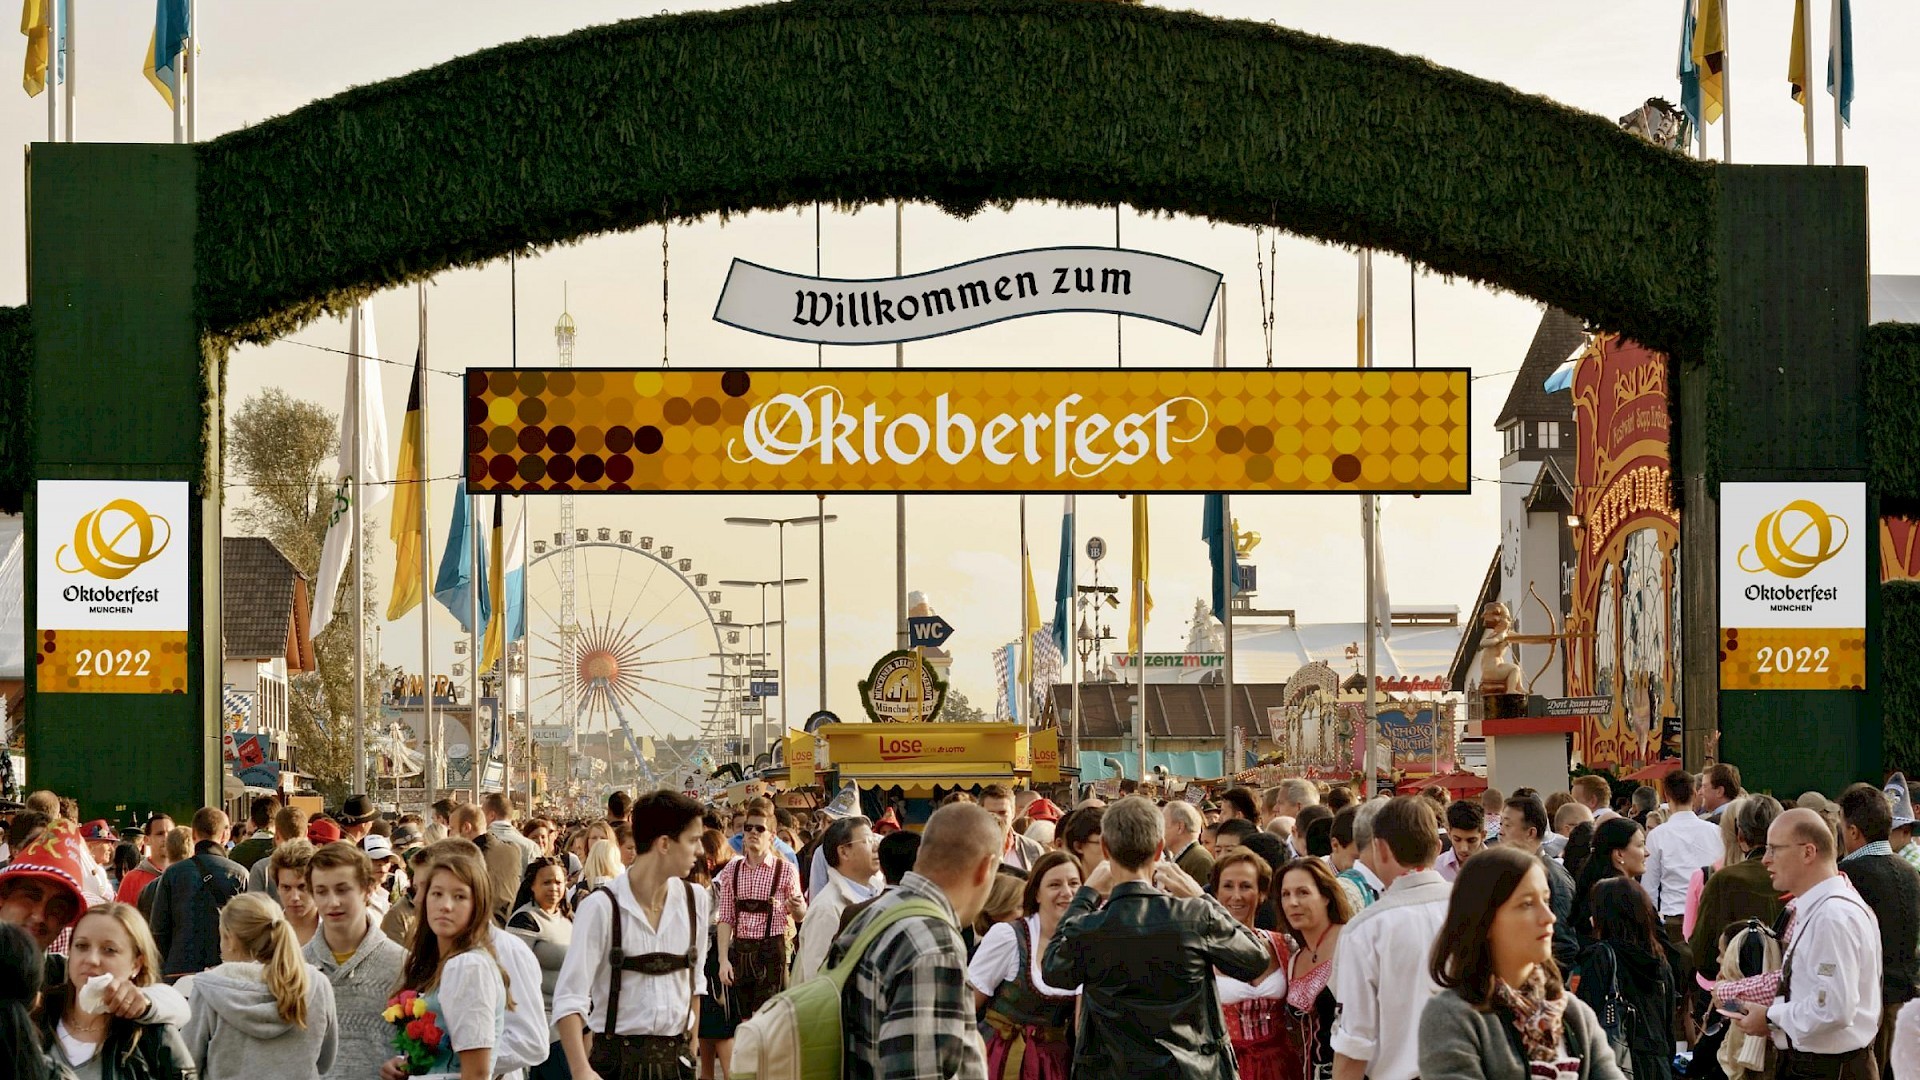 Oktoberfest de Munique (Alemanha) volta a ser realizada depois de dois anos (Foto: Reprodução/Oktoberfest - site oficial)